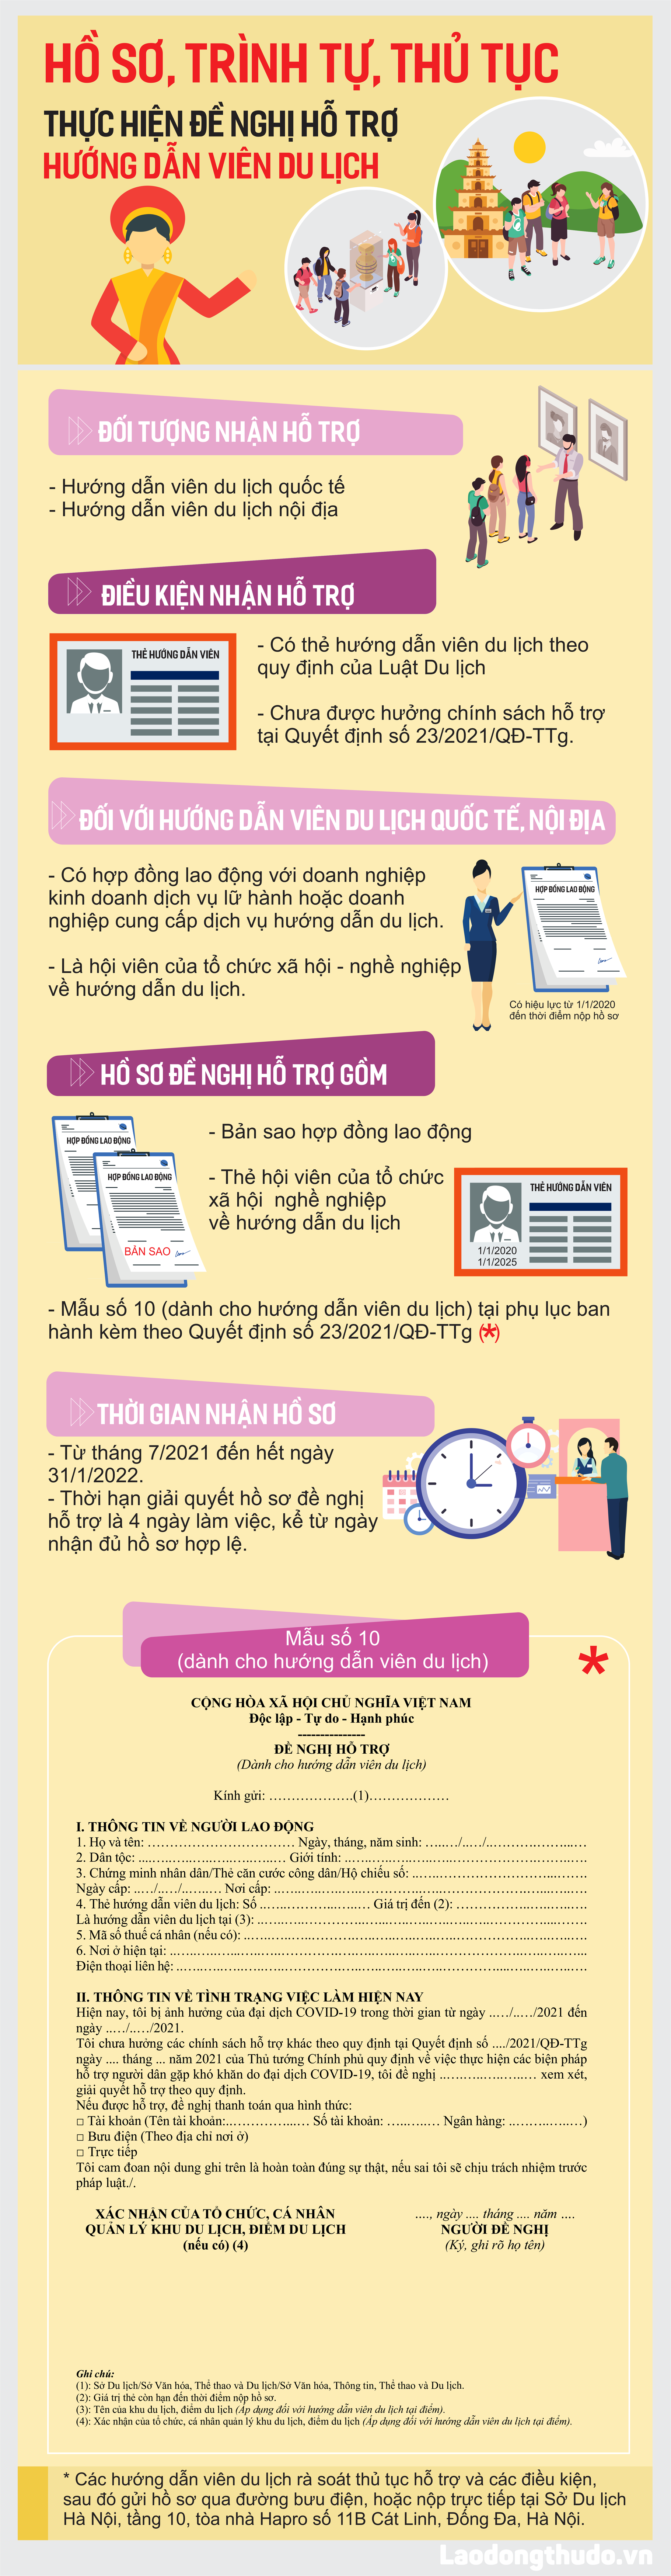 Infographic: Thủ tục hỗ trợ cho hướng dẫn viên du lịch tại Hà Nội